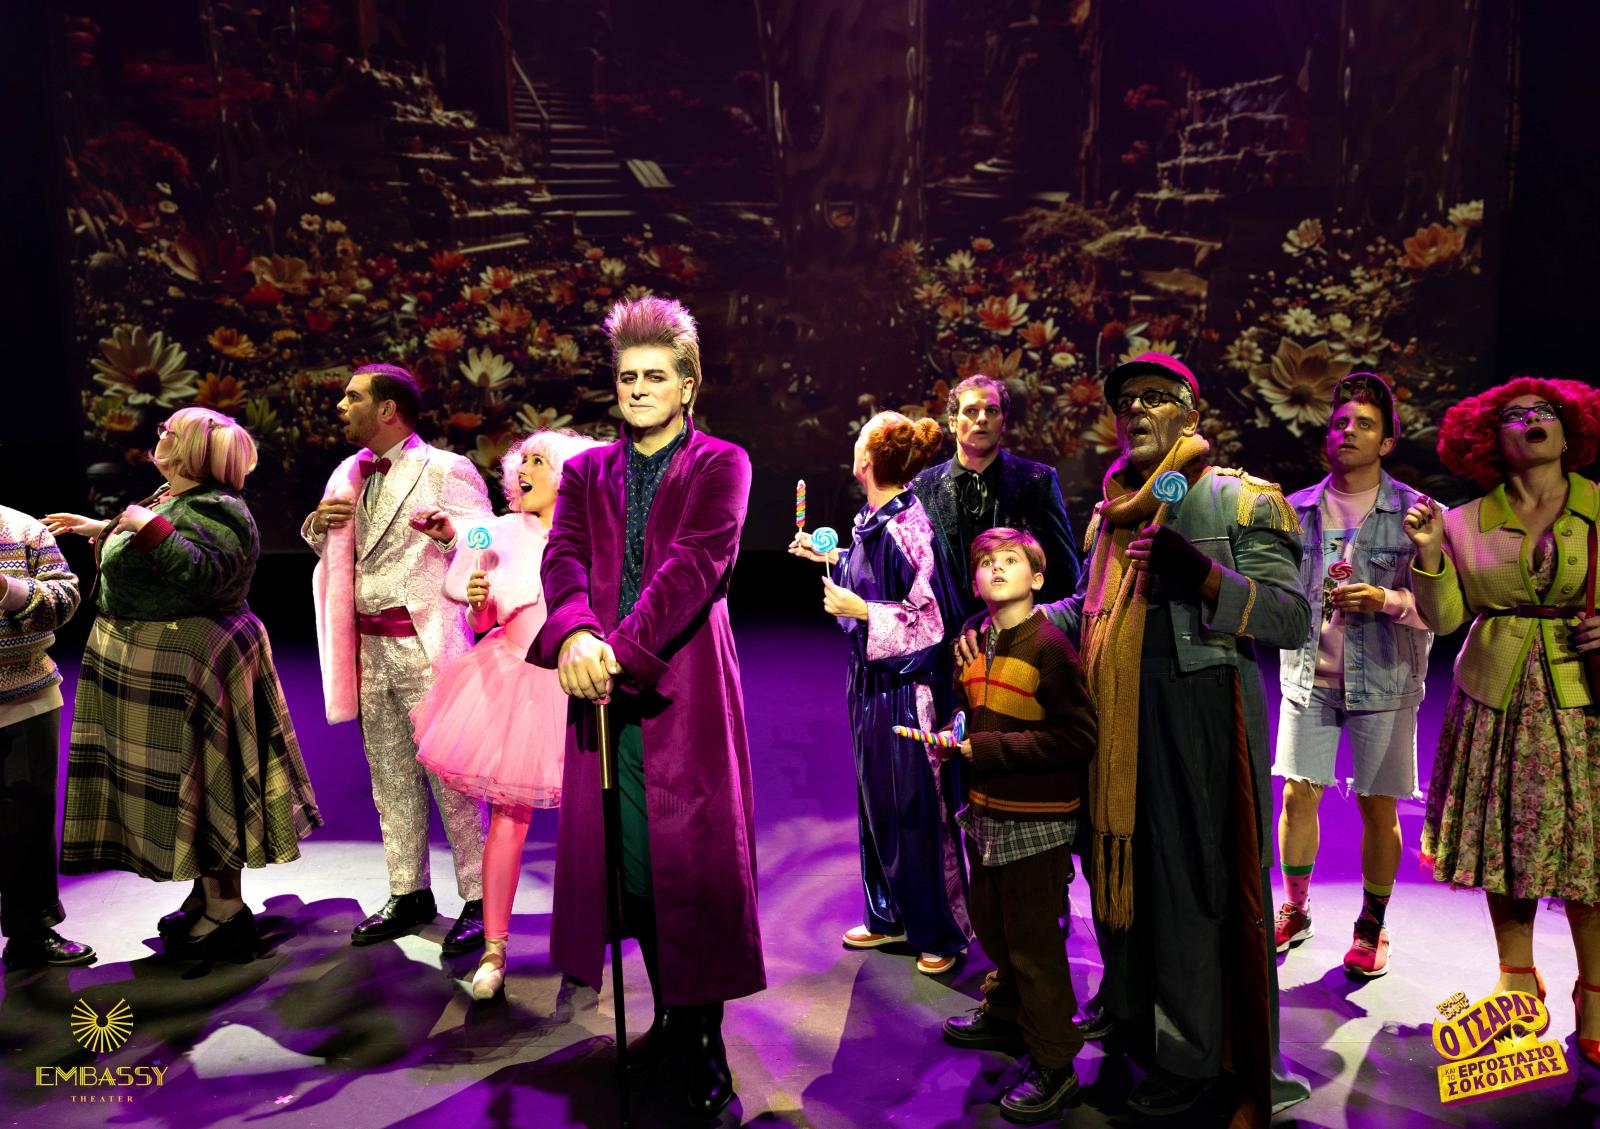 Η μαγική παράσταση "Ο Τσάρλι και το Εργοστάσιο Σοκολάτας:" συνεχίζεται για 8 ακόμα παραστάσεις στο EMBASSY Theater